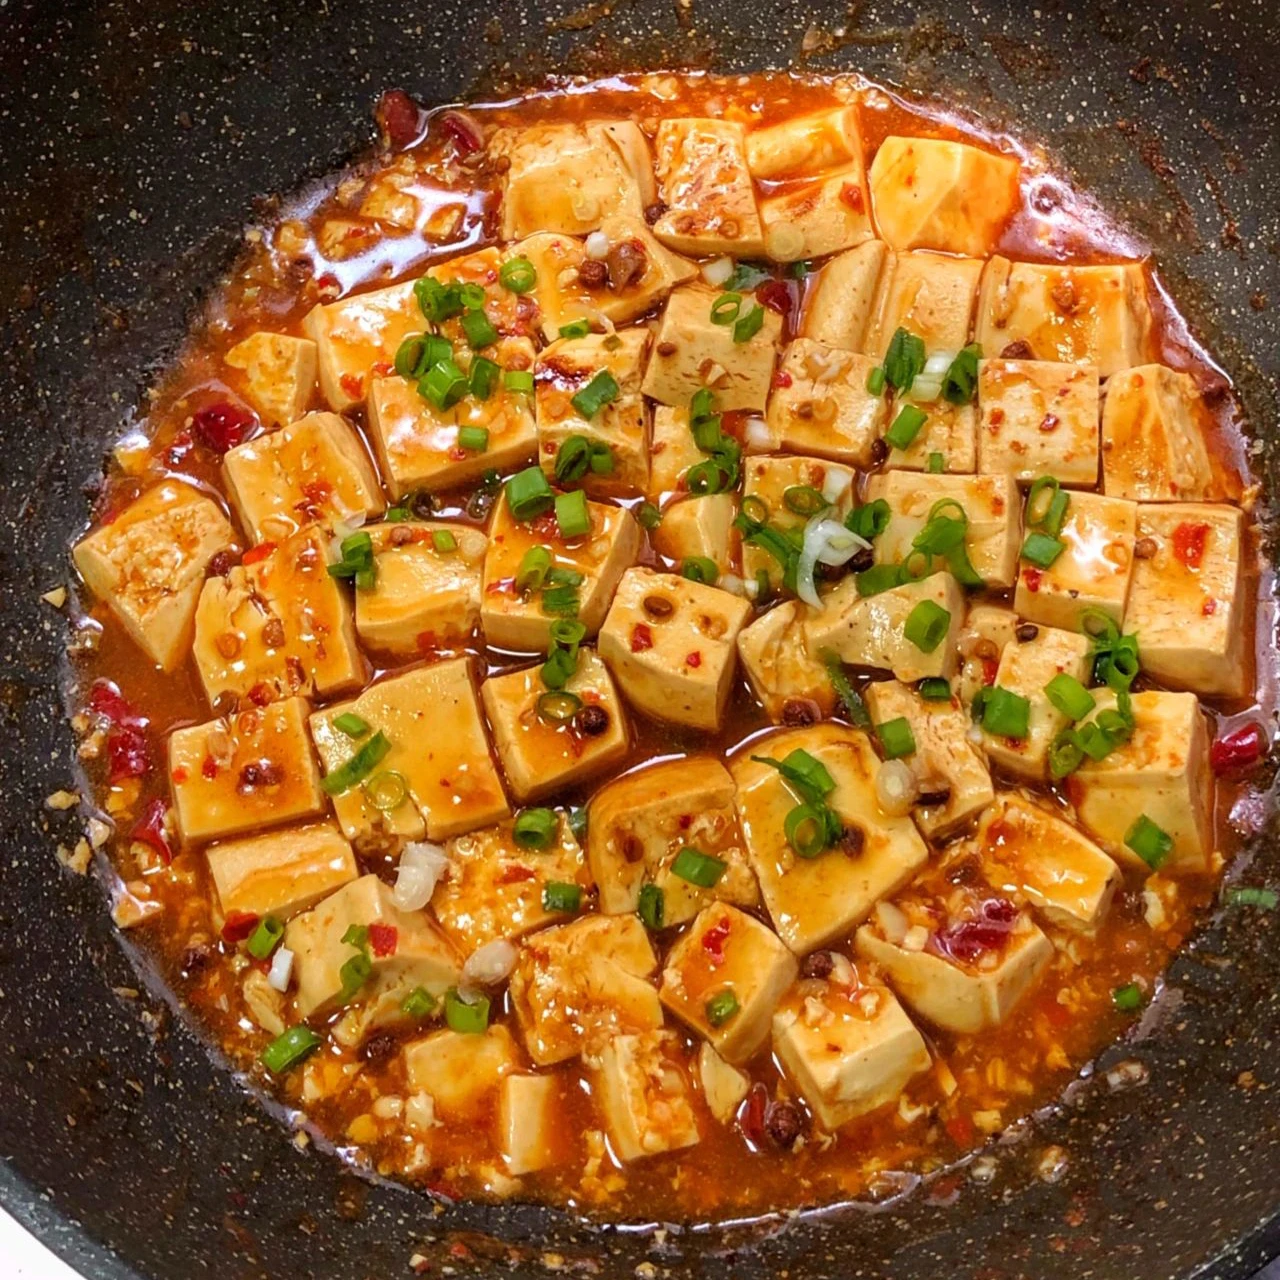 Sauce de cuisson épicée du Sichuan, vente en gros d'usine, pour tofu, huile végétale, sauce épicée pour la cuisine quotidienne, assaisonnement végétarien